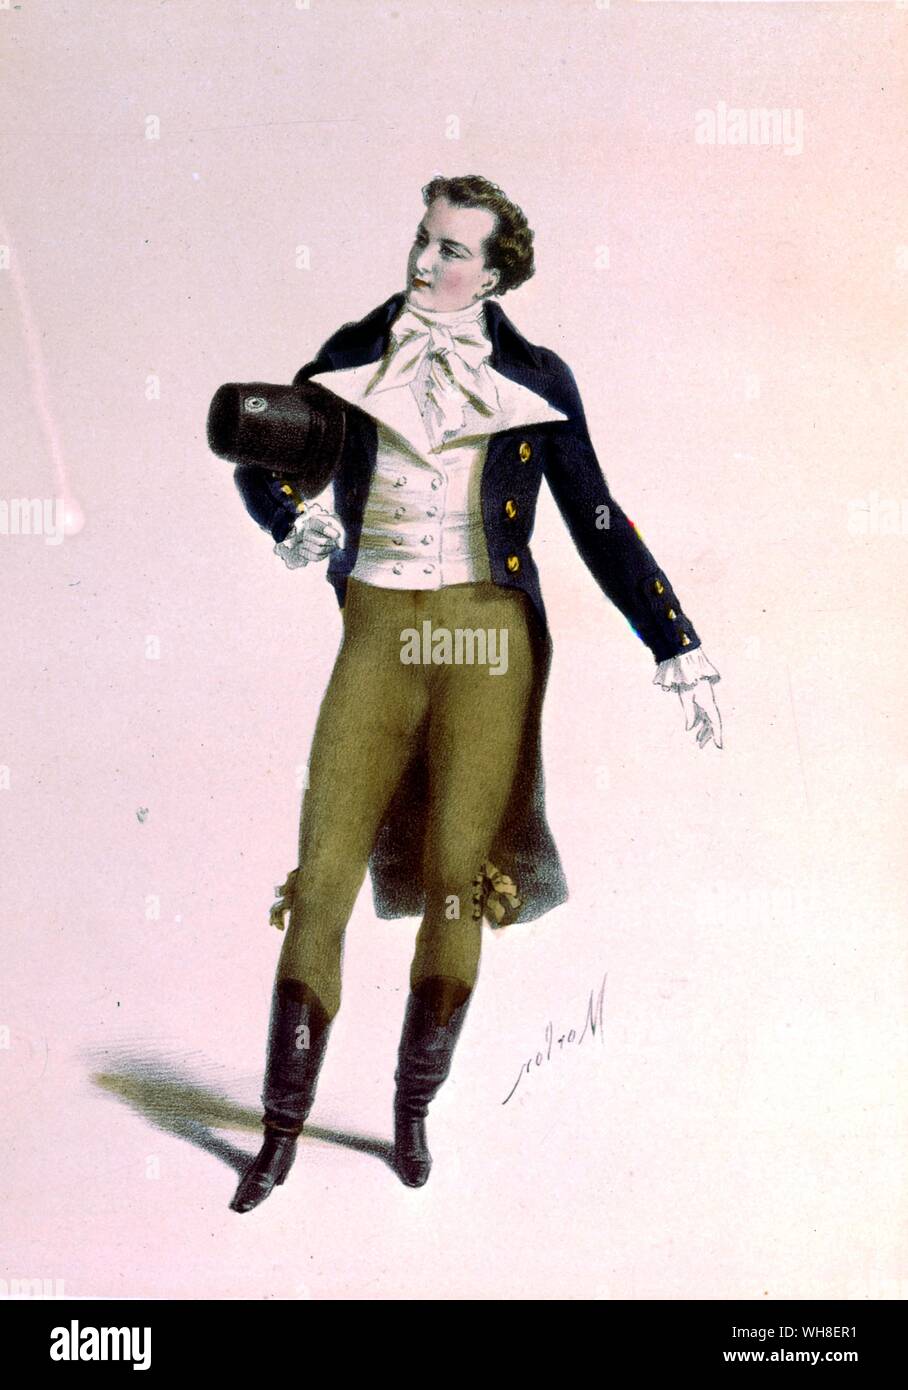 El actor Bressant como Humbert en Le Lion Amoureux (El León en el amor), trajes des teatros (trajes de los teatros) de 1860. Desde la vie Parisienne por Joanna Richardson (1860). Foto de stock